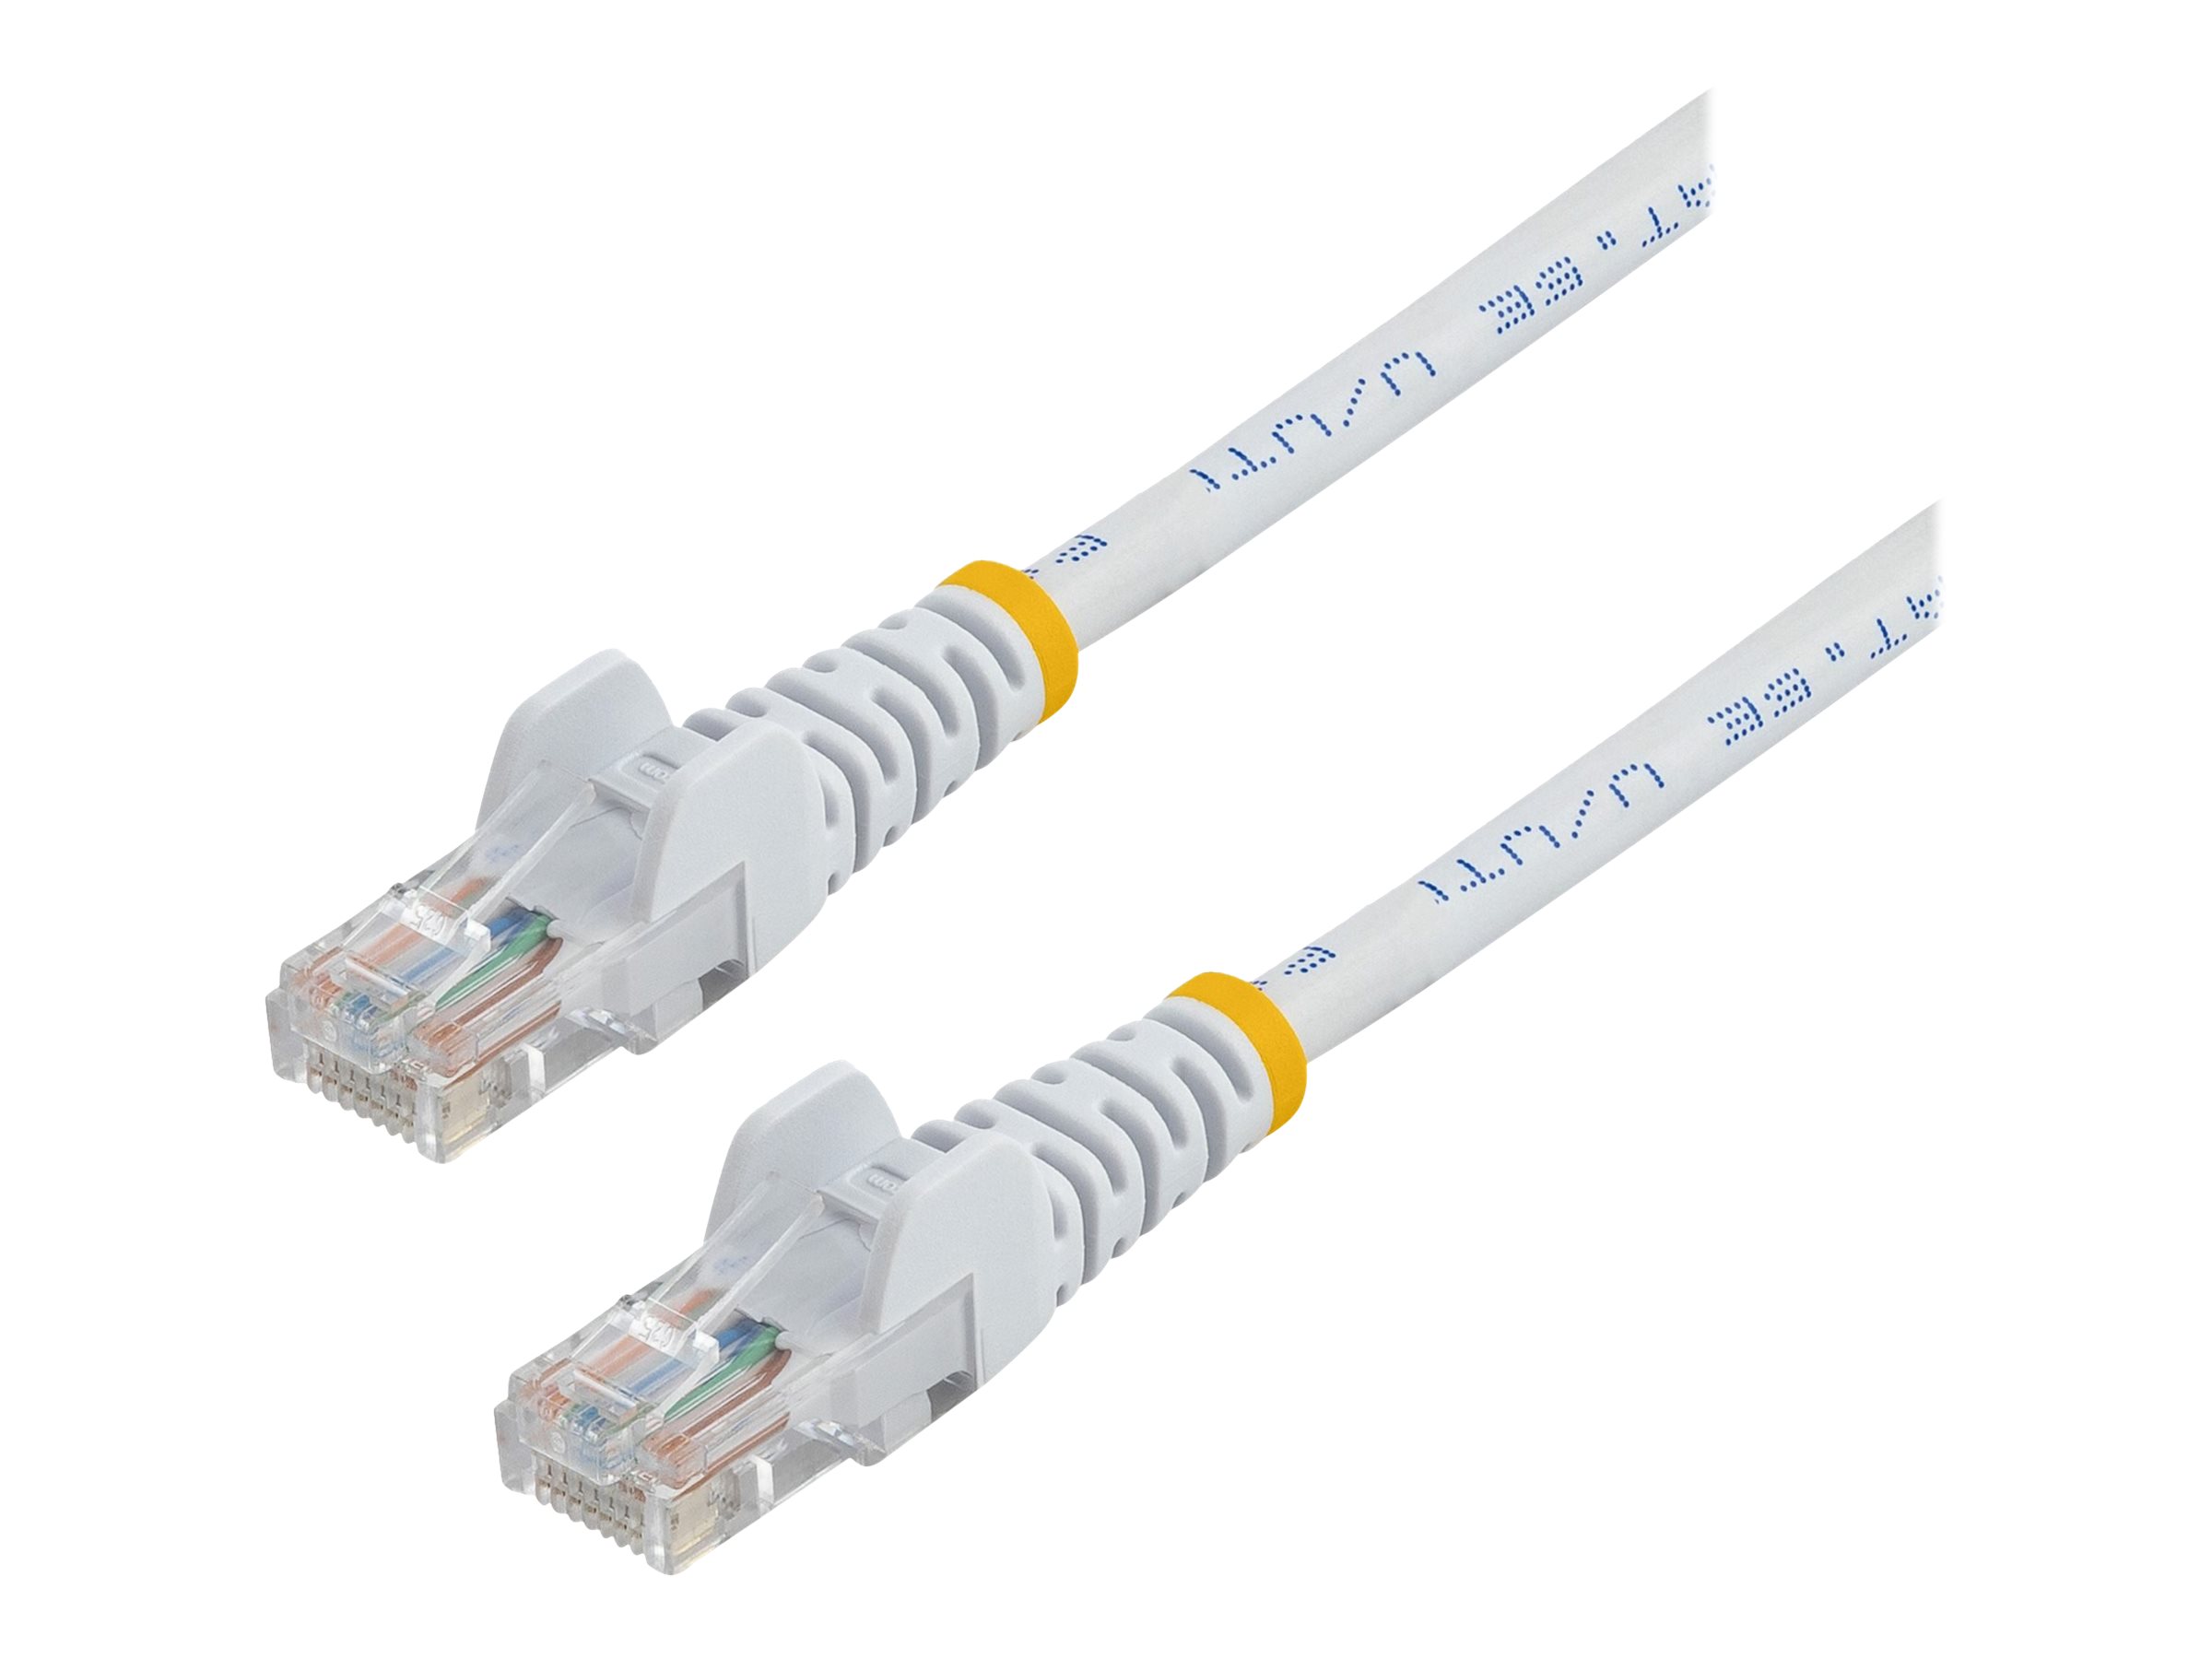 StarTech.com 0,5m Cat5e Ethernet Netzwerkkabel Snagless mit RJ45 - Cat 5e UTP Kabel - Weiss - Patch-Kabel - RJ-45 (M) zu RJ-45 (